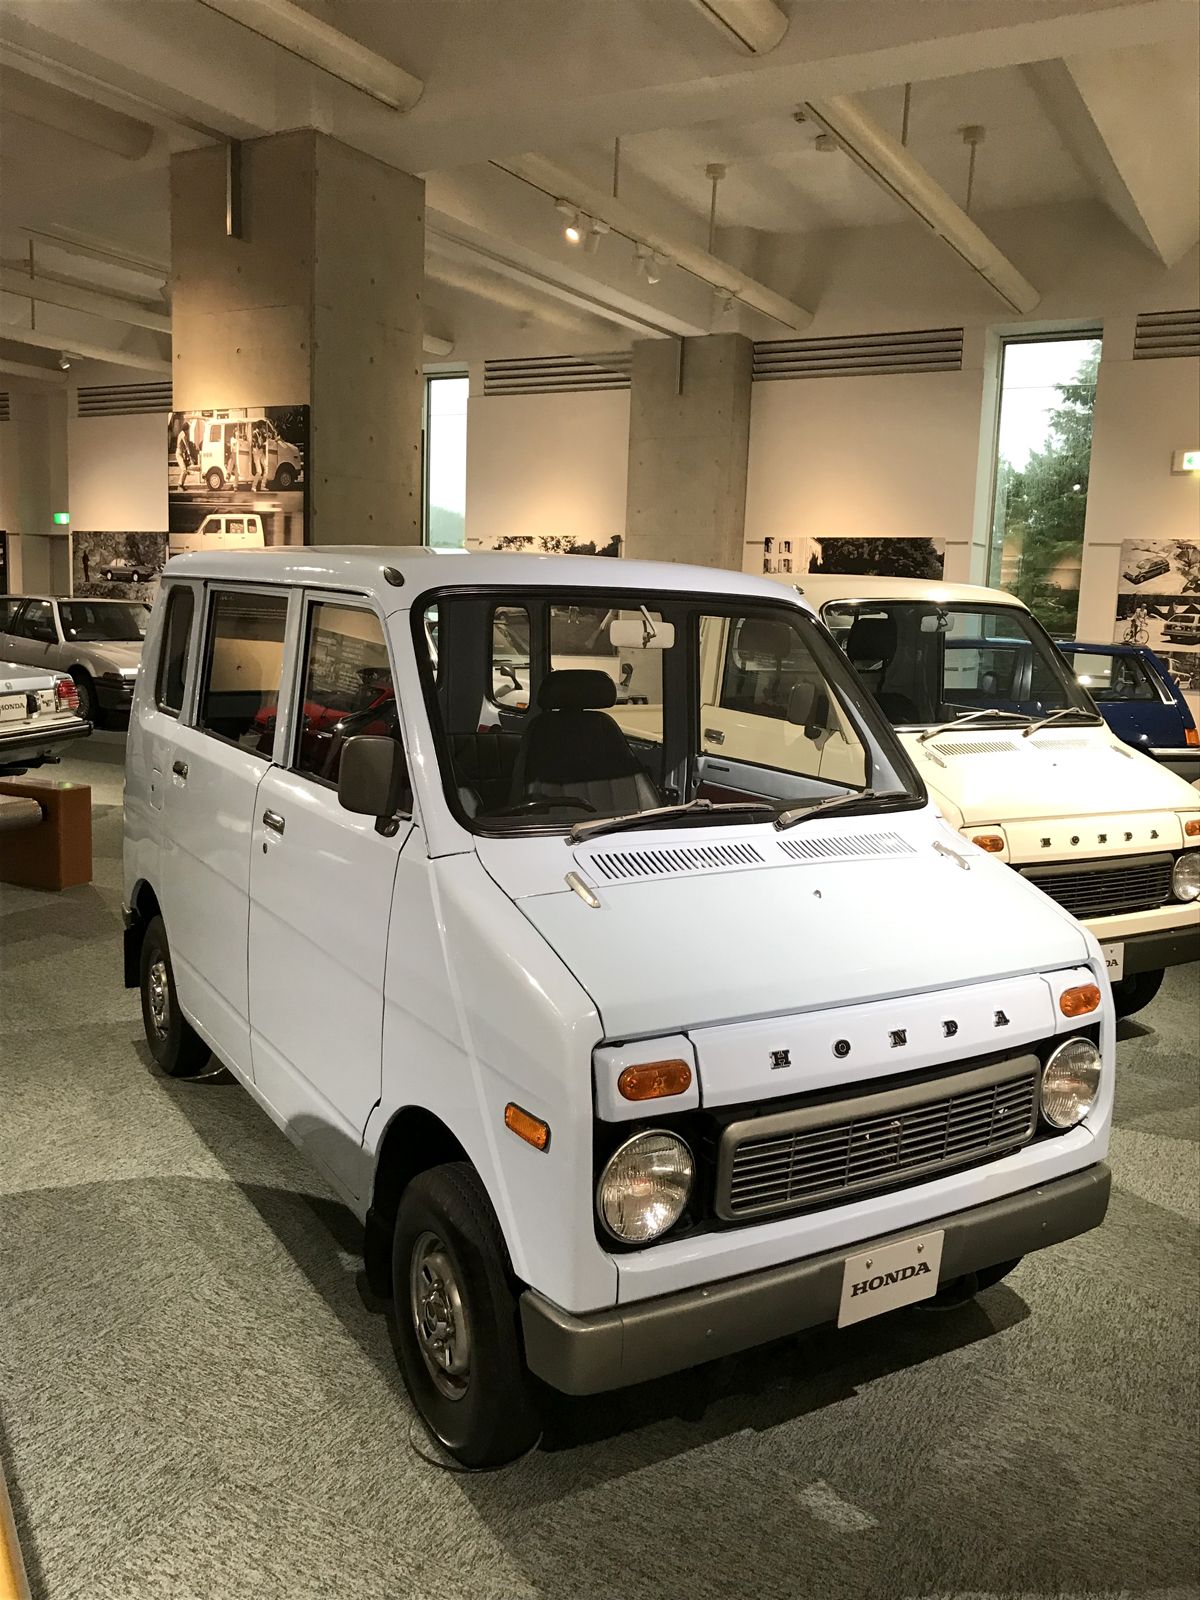 CA - 26/12/2019 - Museu da Honda em Motegi, no Japo. Honda Life Step Van (1972) - Fotos: Jason Vogel